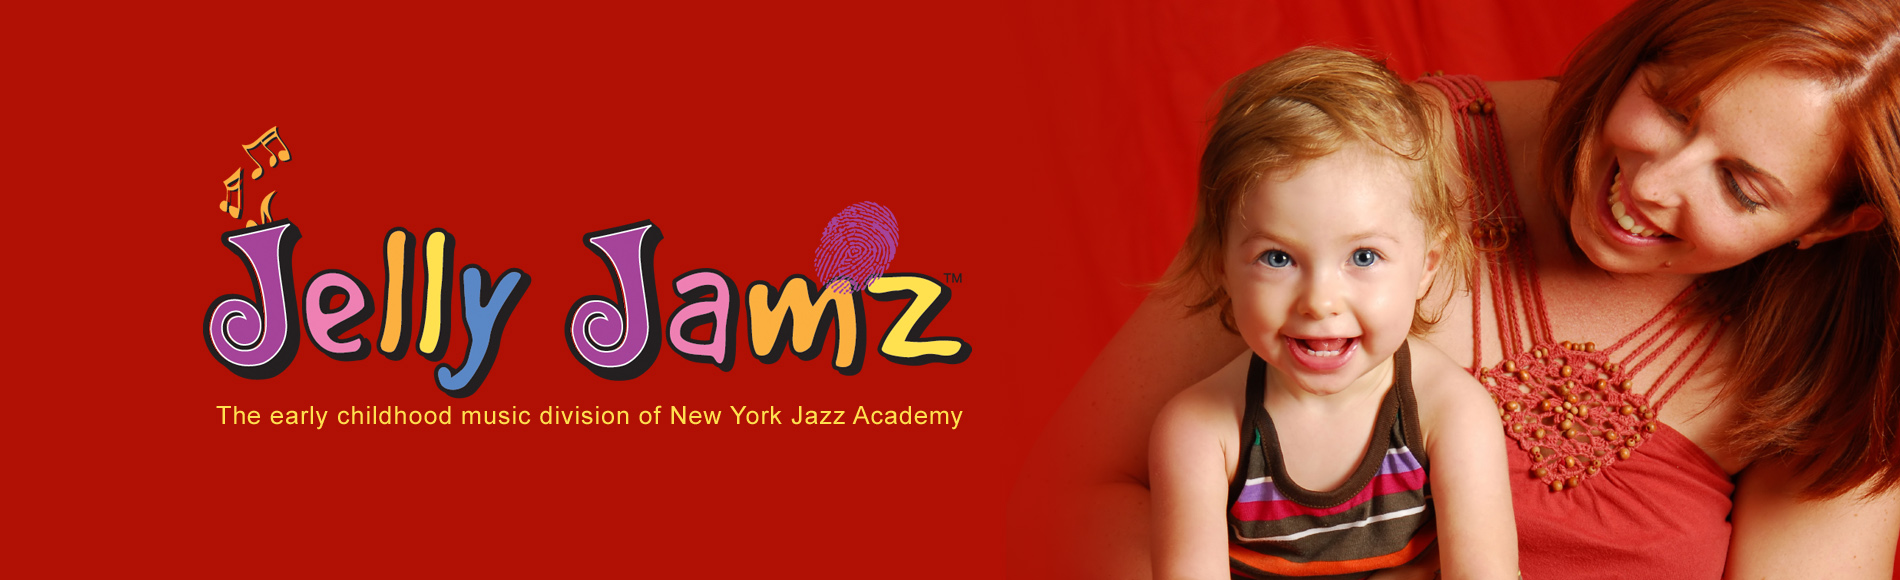 New York Jazz Academy Jelly Jamz